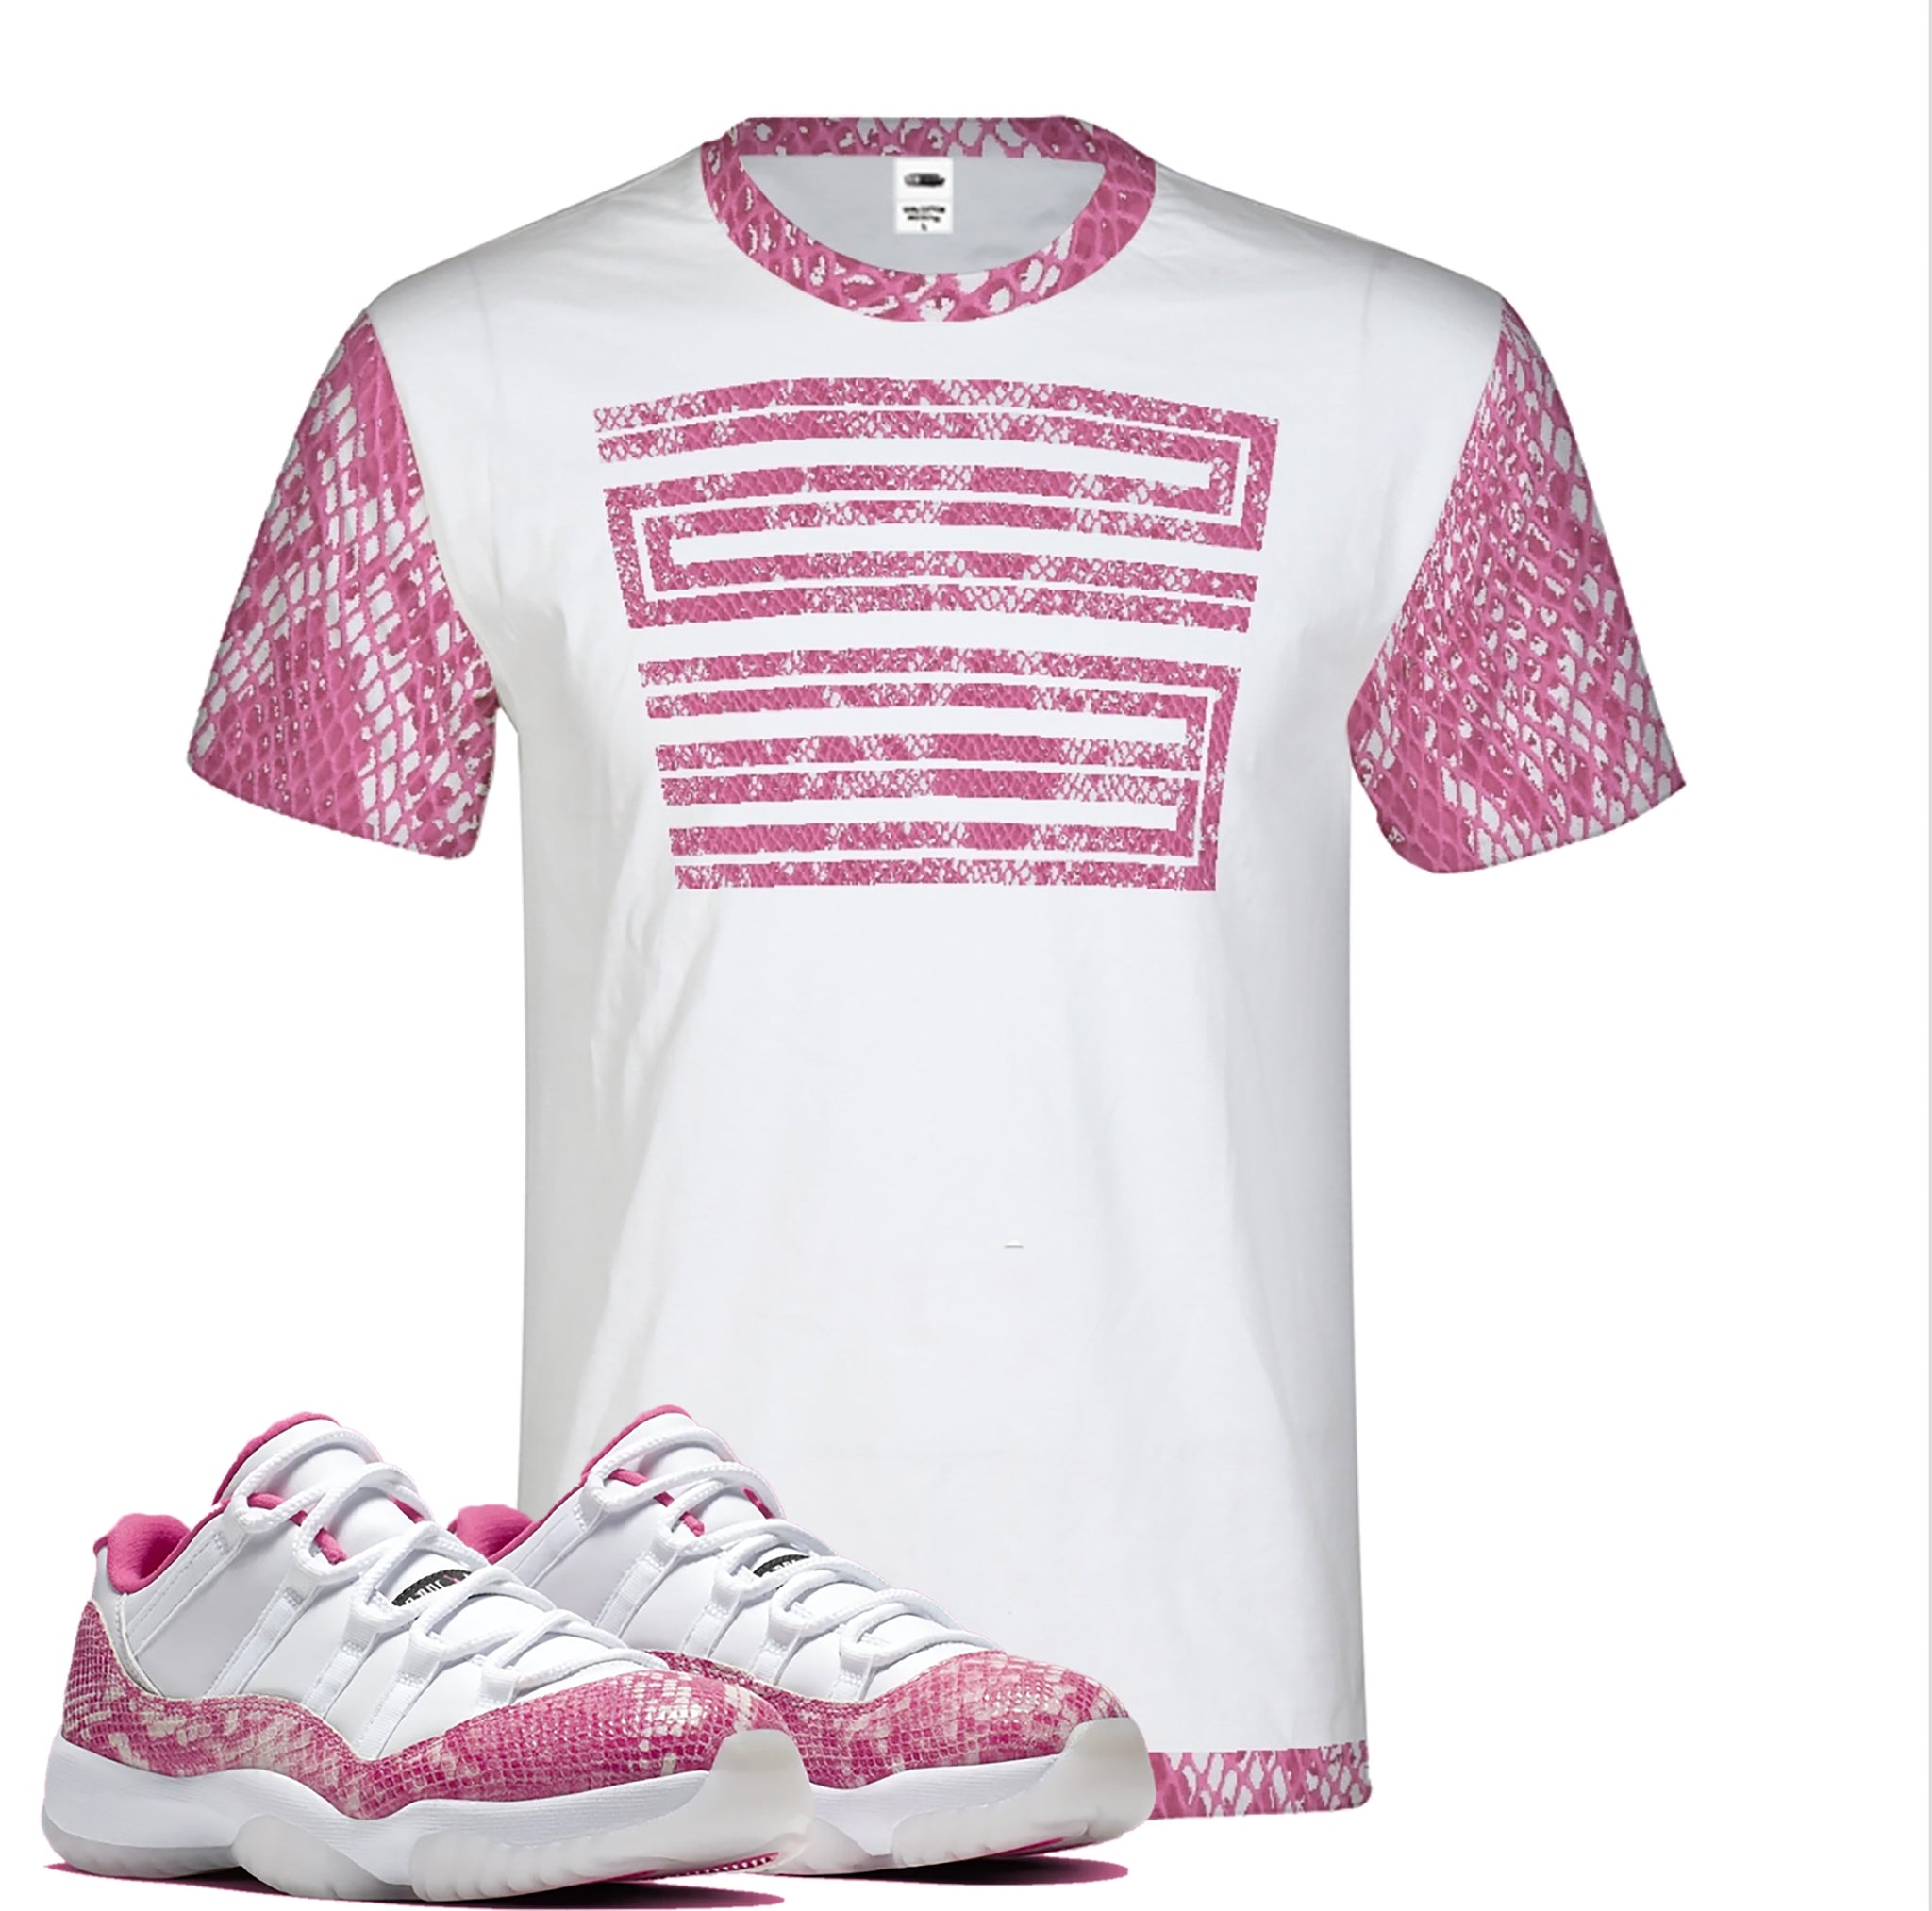 jordan 11 pink snakeskin shirt